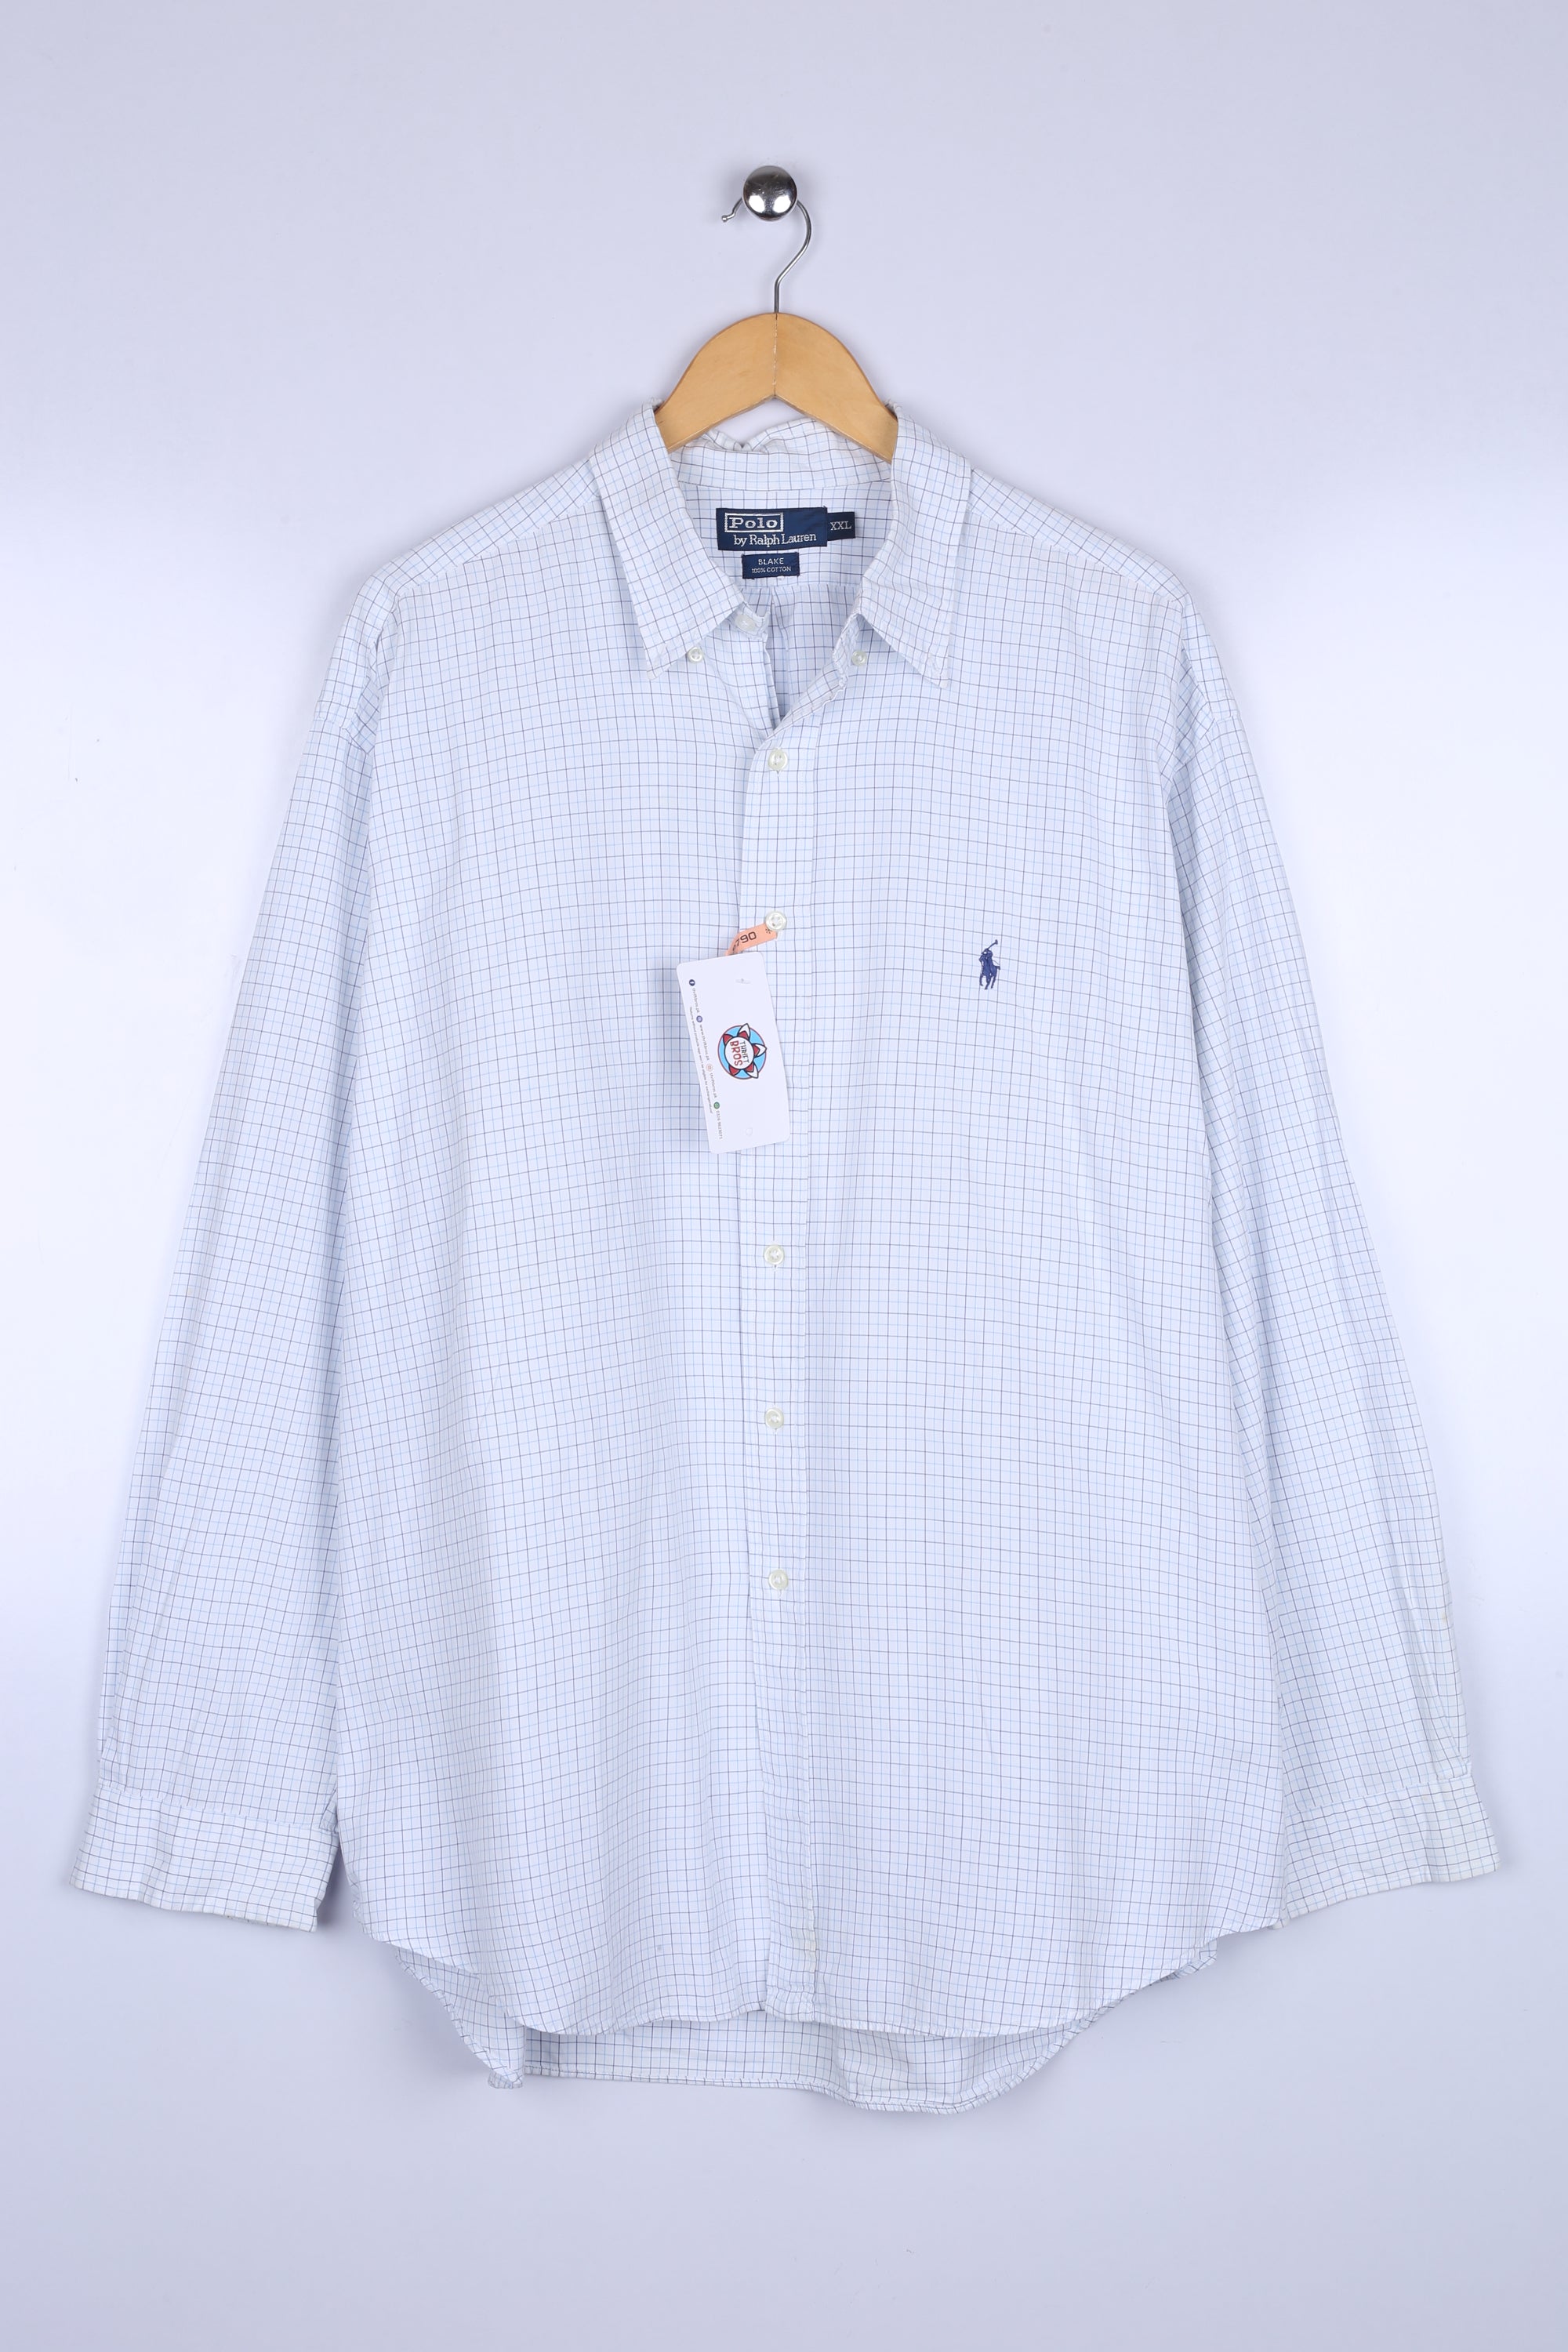 Vintage Ralph Lauren Shirt White Checkered